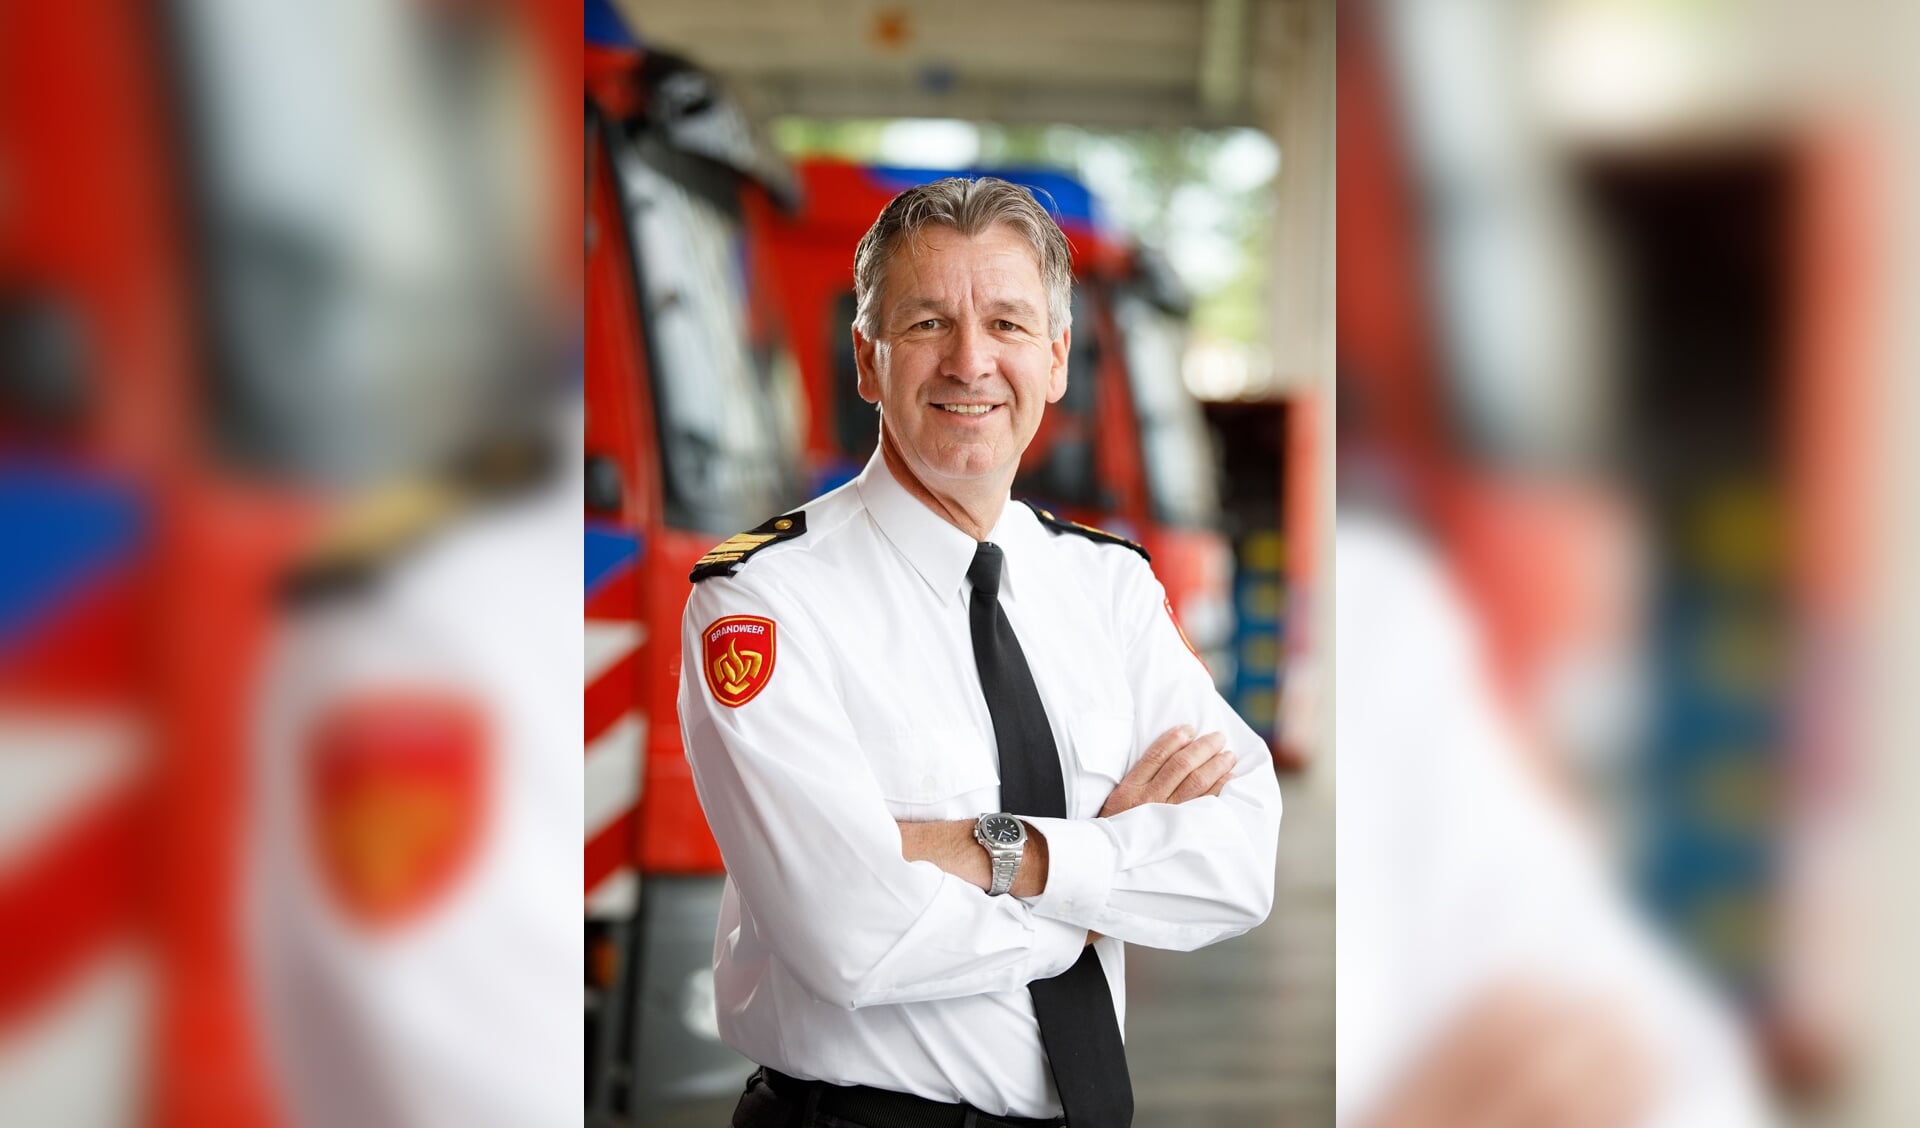 Brandweercommandant Stephan Wevers: 'de inzet het afgelopen jaar was gemiddeld.'